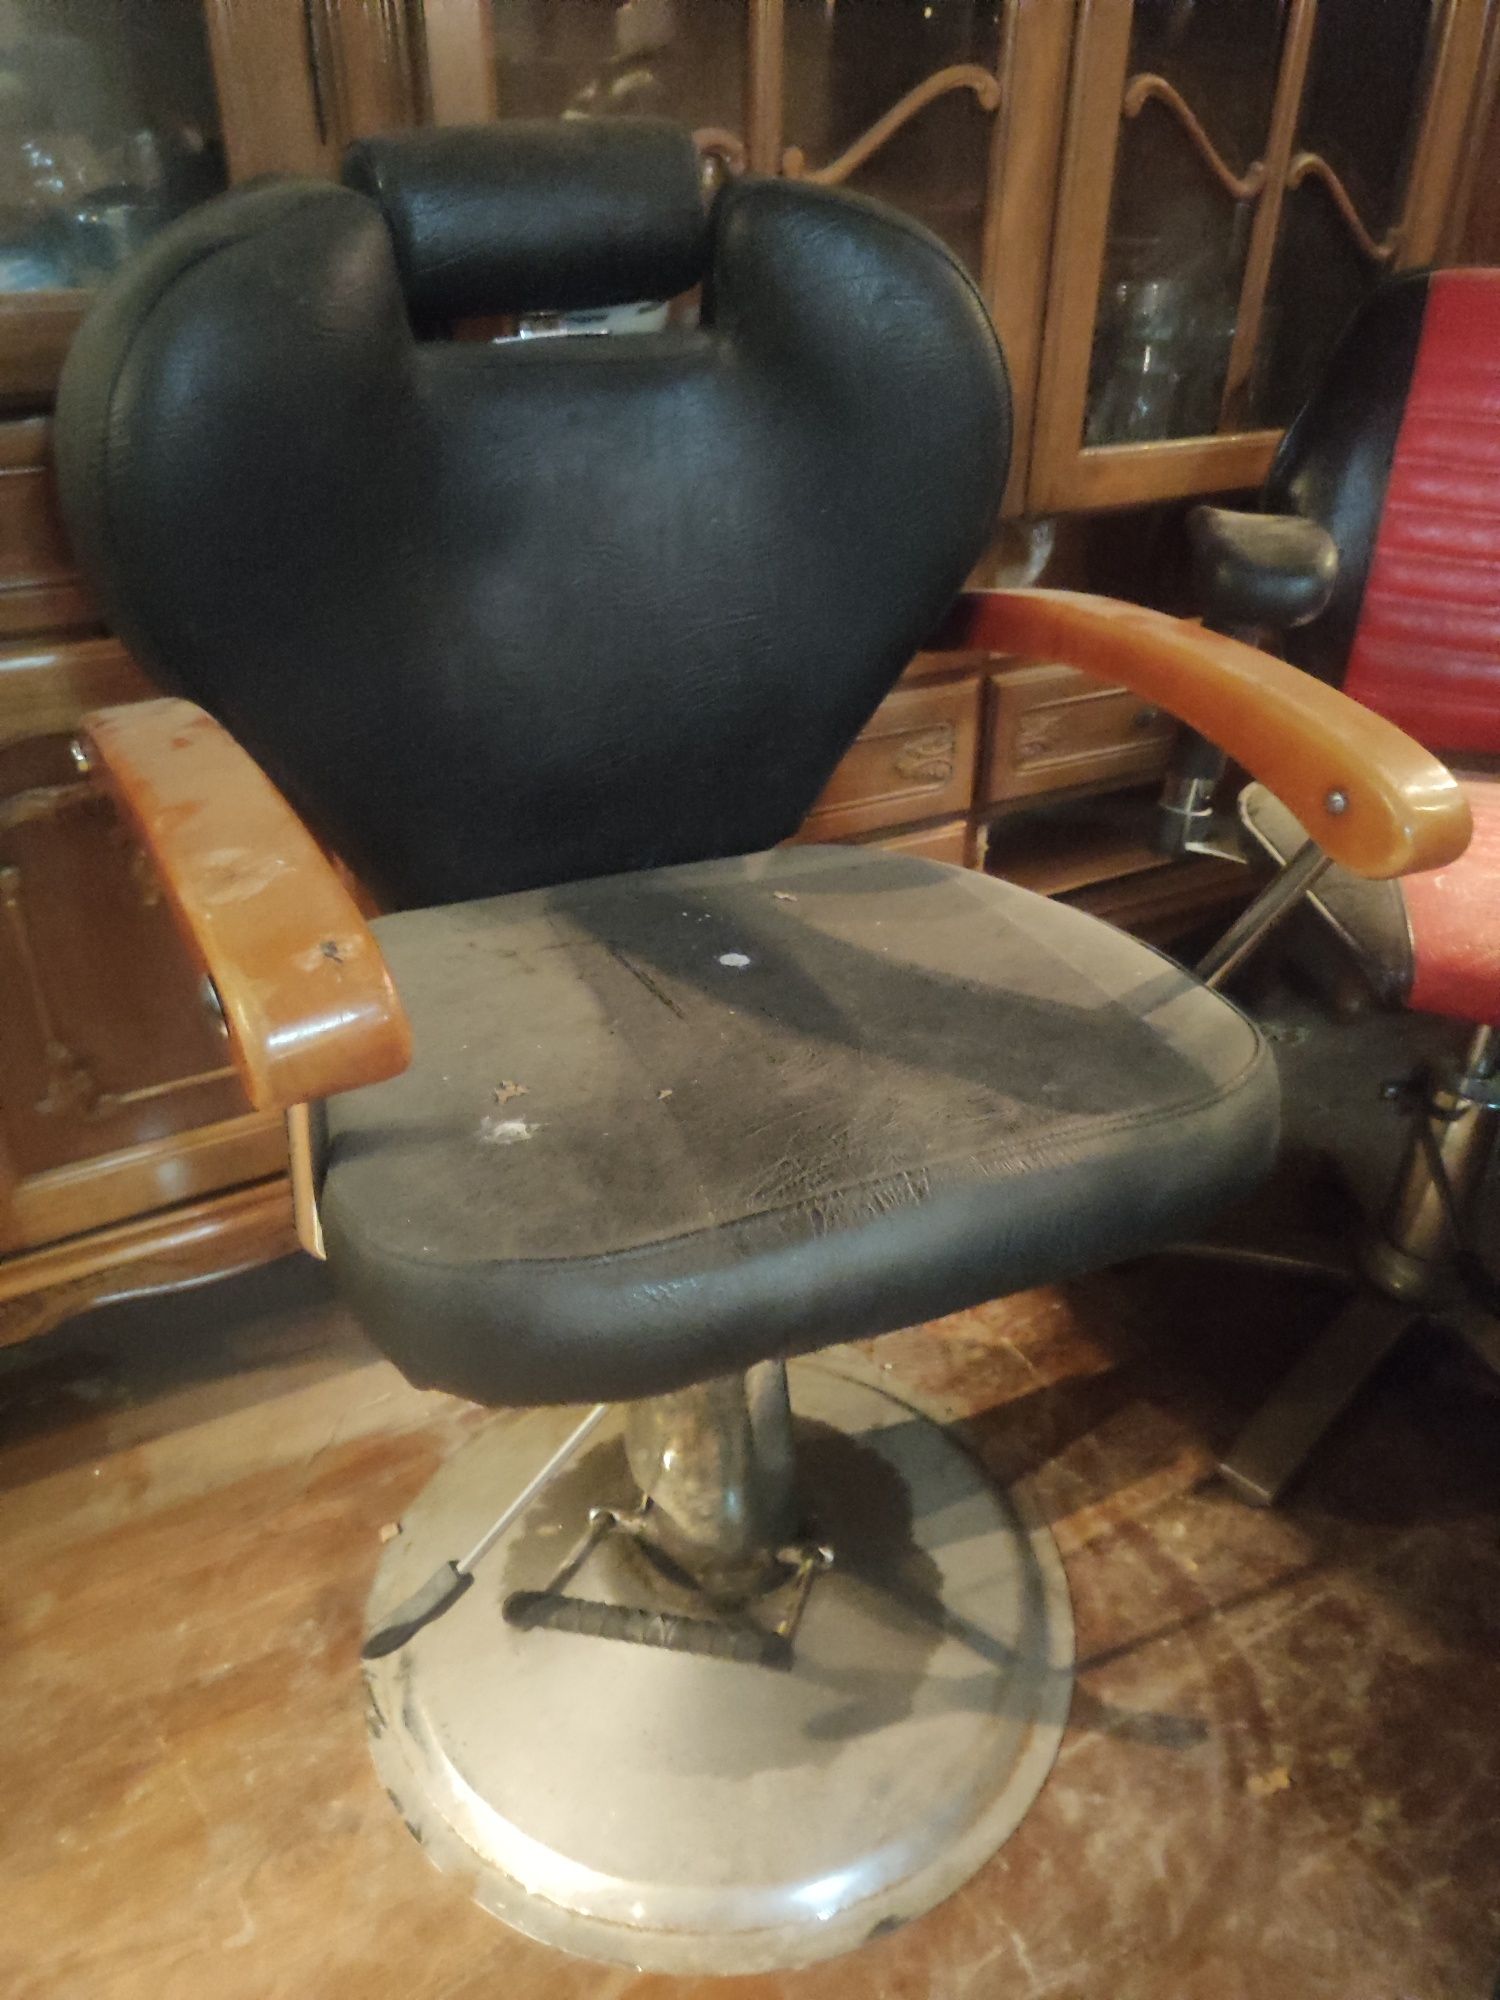 Кресло для парикмахера